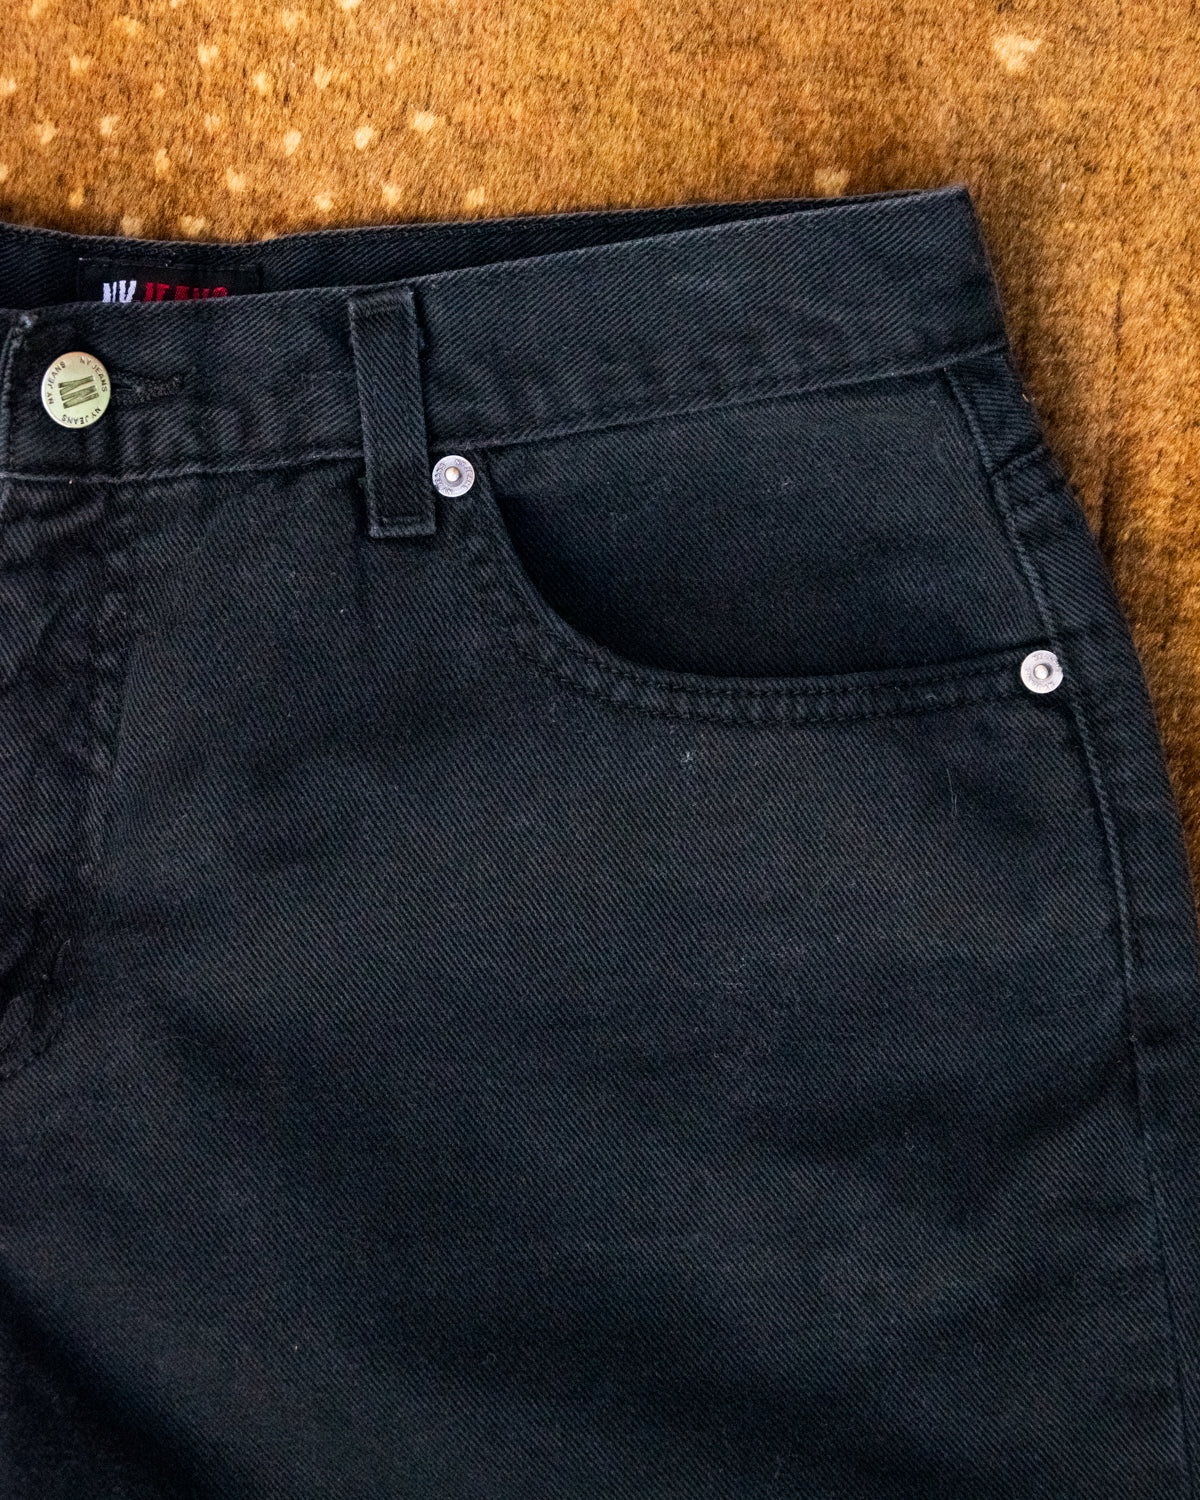 90s NY Jeans Black Denim Shorts